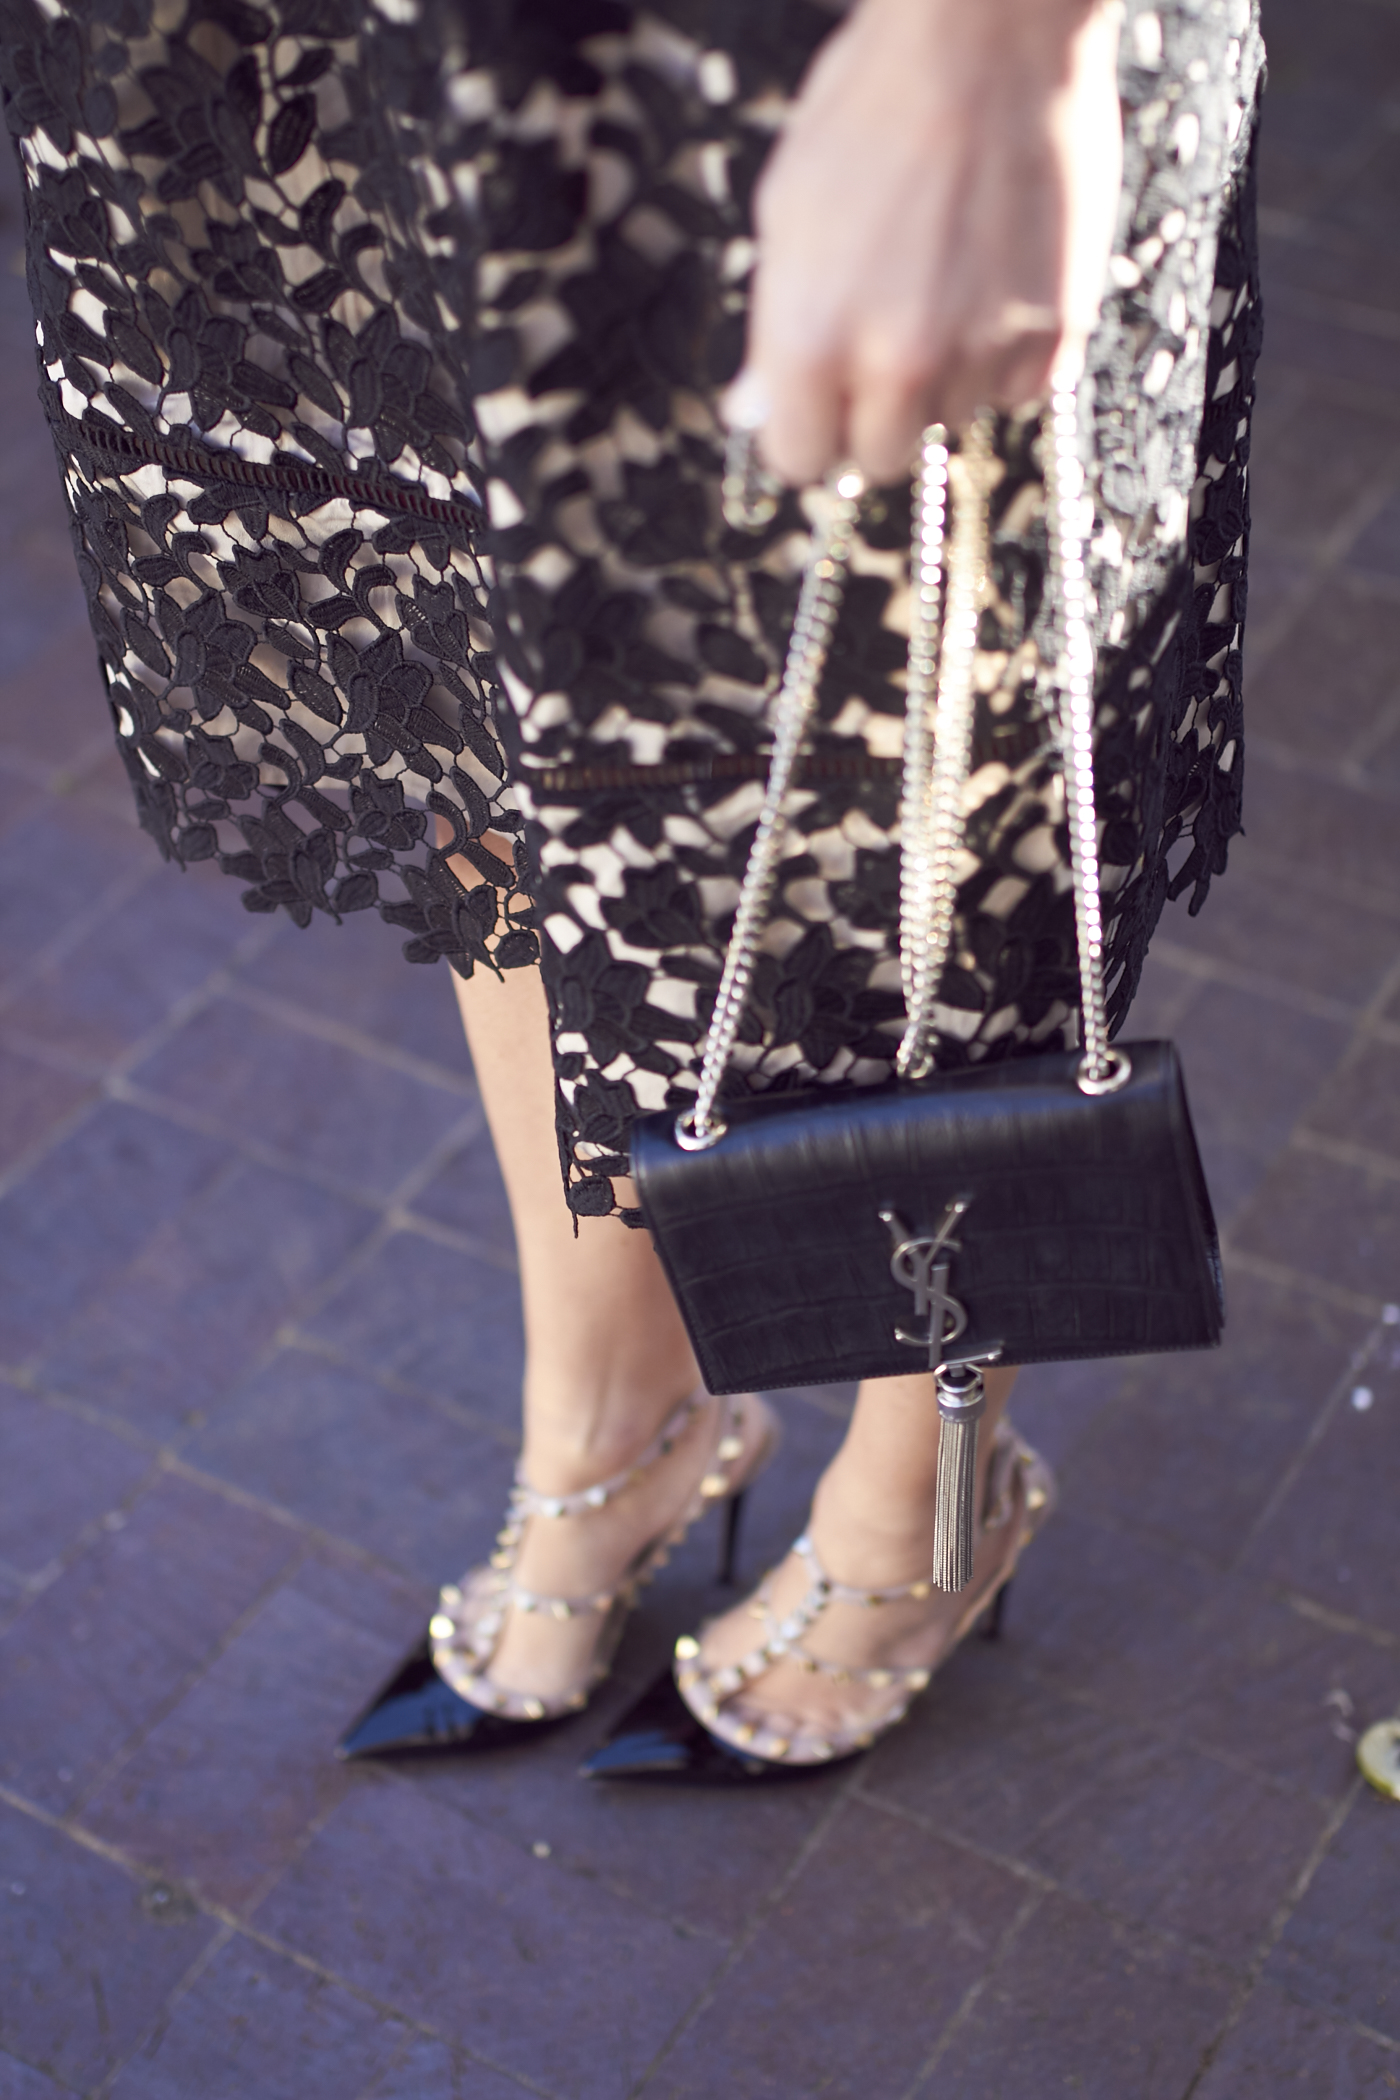 fashion-jackson-ysl-handbag-valentino-rockstud-pumps-black-lace-dress